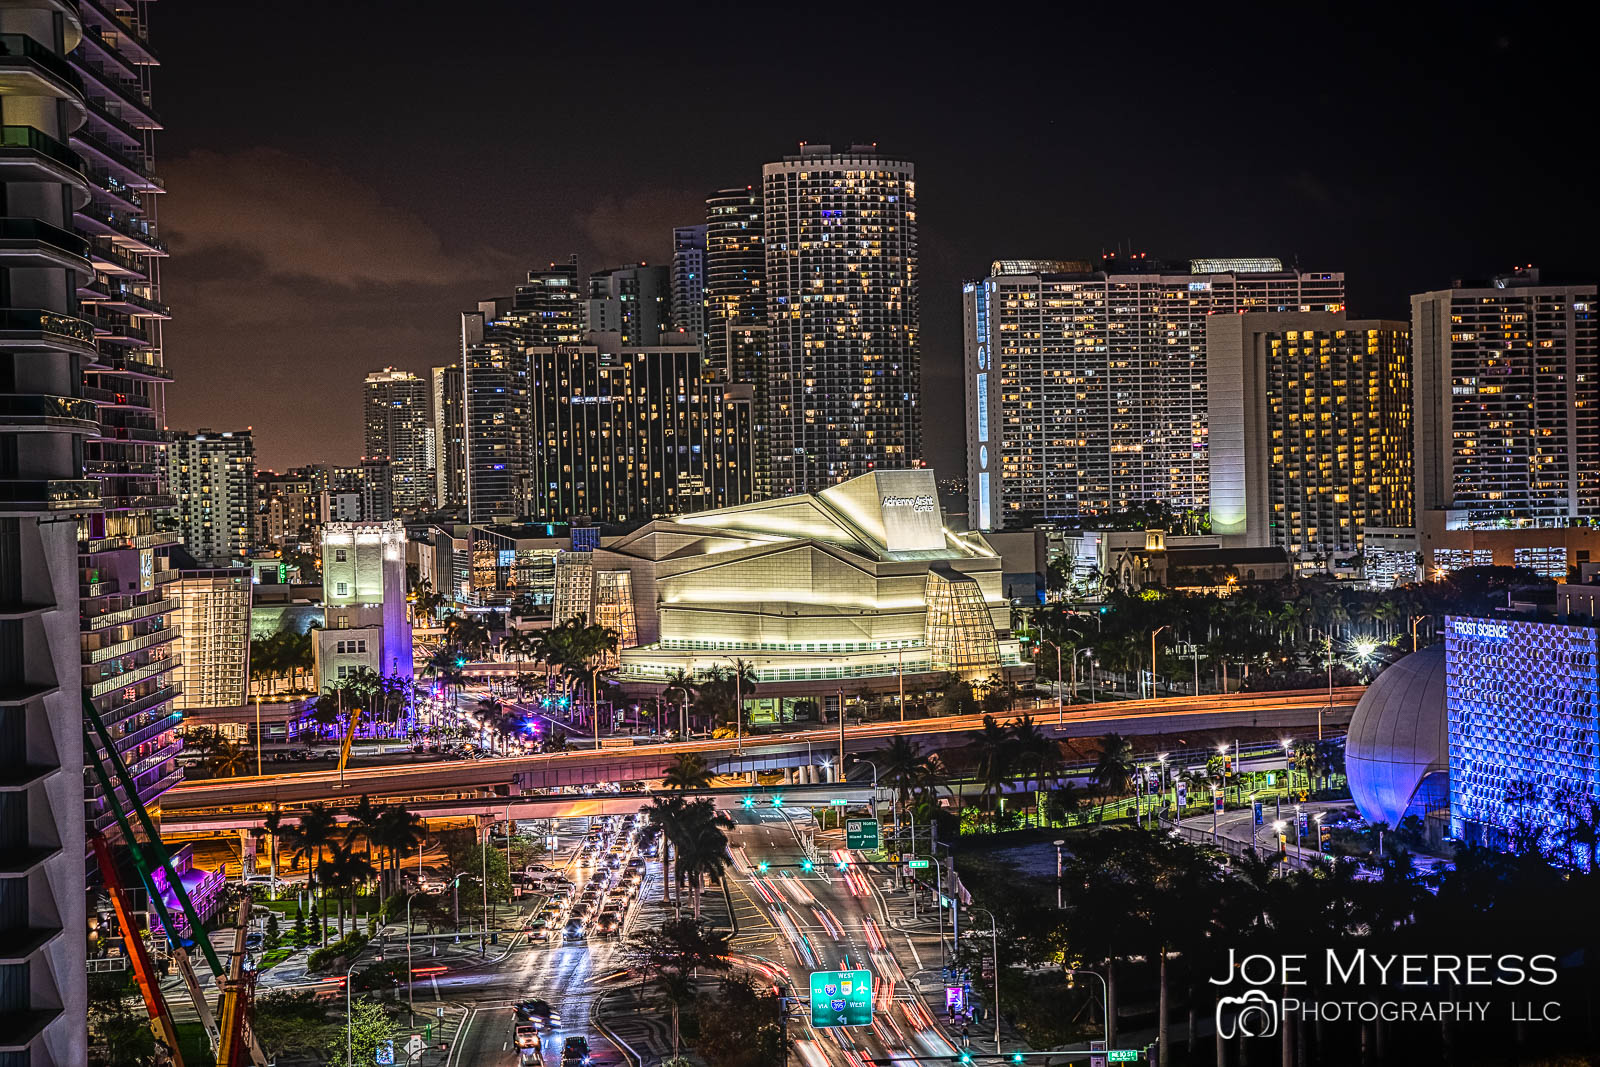 Miami after dark